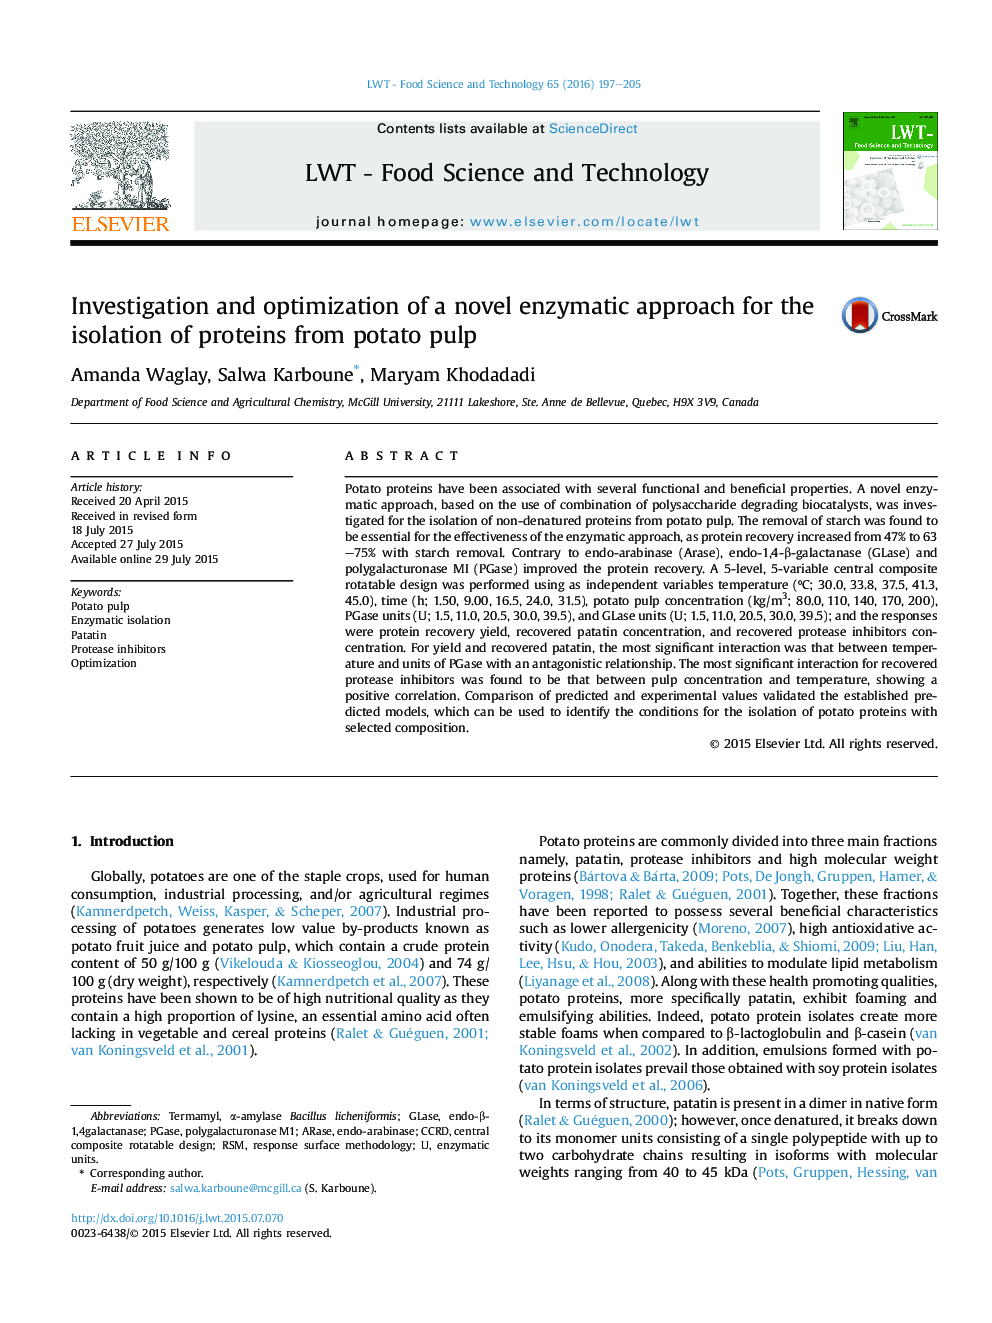 بررسی و بهینه سازی یک رویکرد آنزیمی جدید برای جداسازی پروتئین از پالپ سیب زمینی 